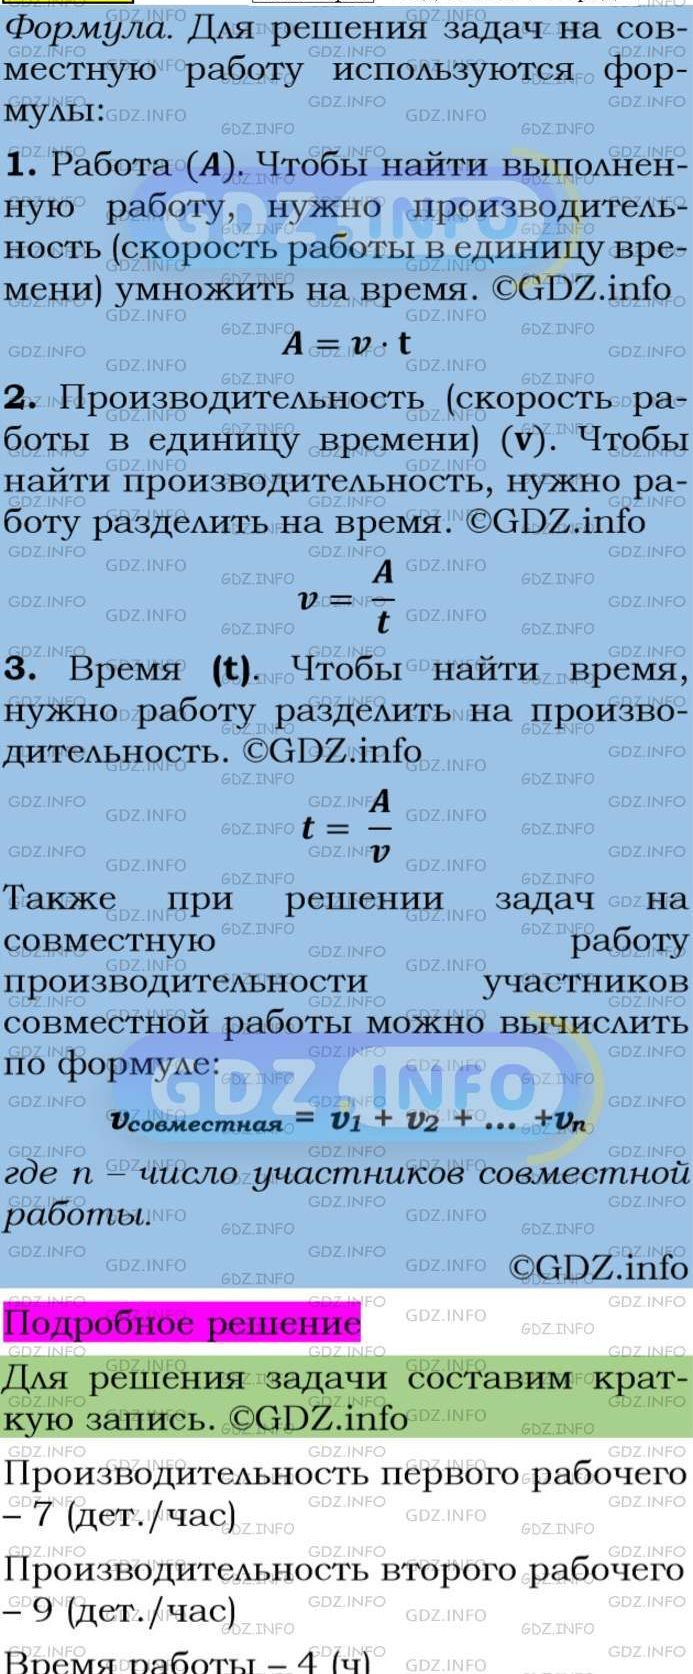 Фото подробного решения: Номер задания №31 из ГДЗ по Алгебре 7 класс: Макарычев Ю.Н.